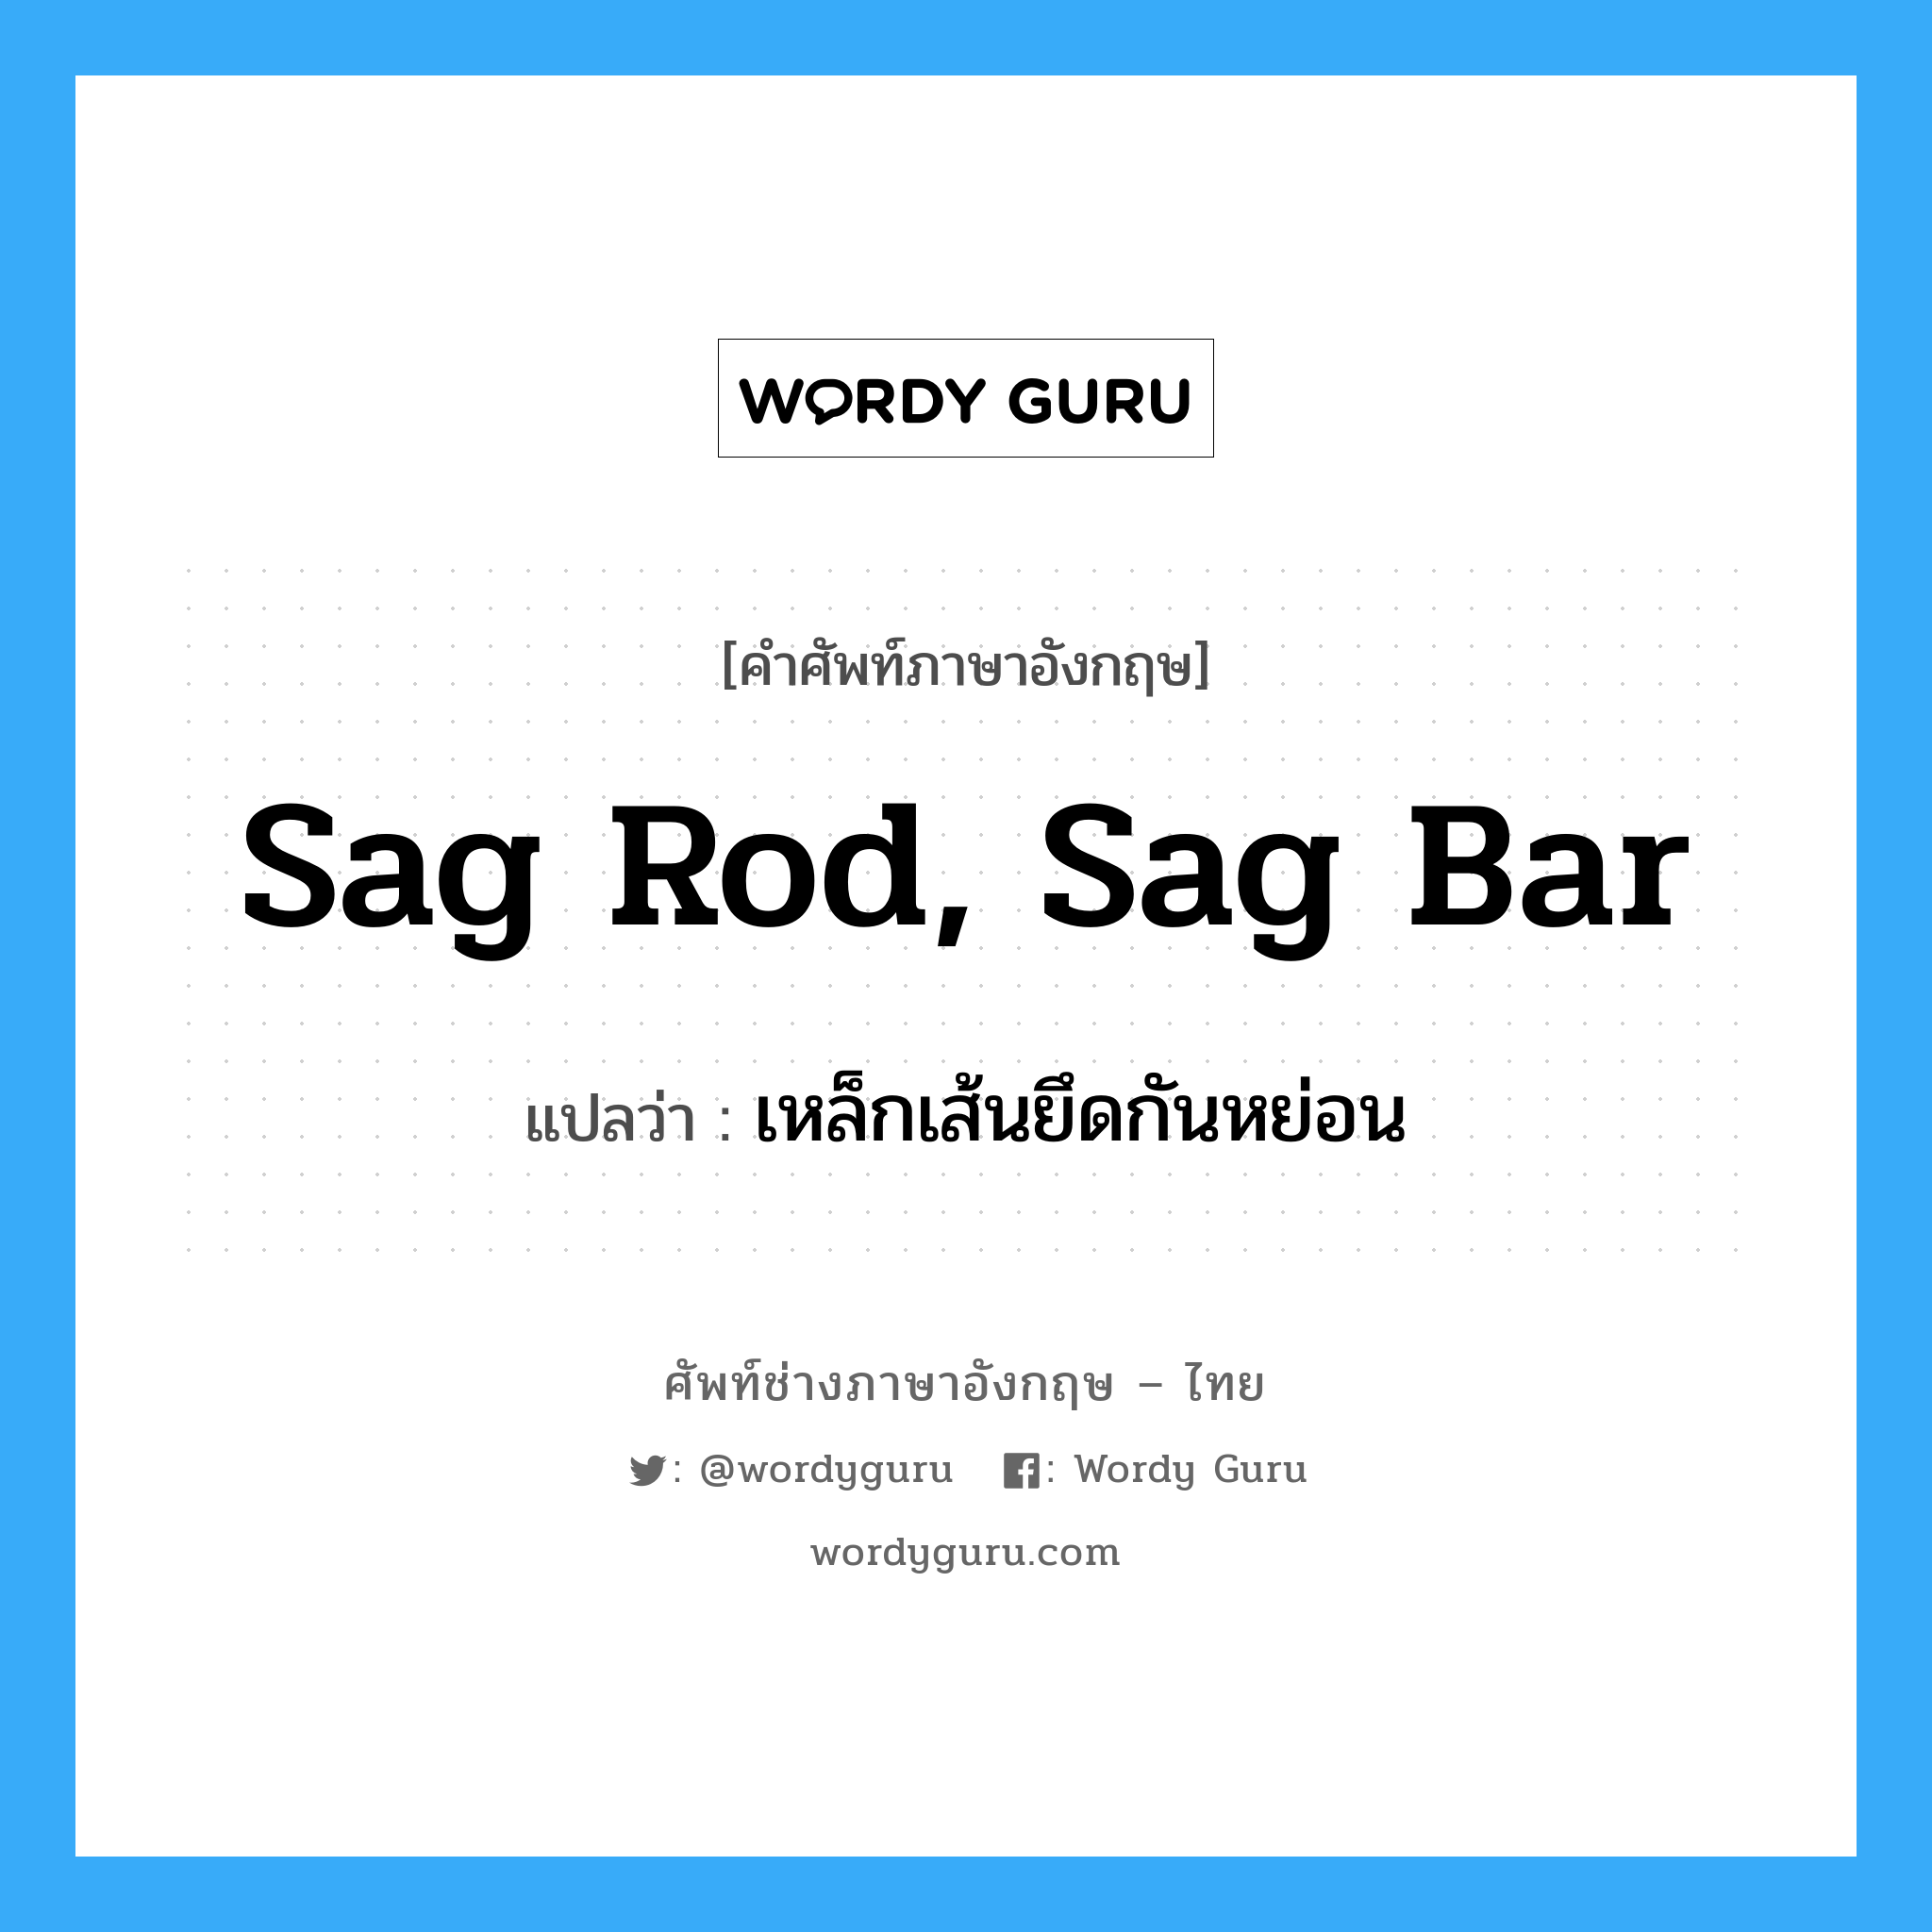 เหล็กเส้นยึดกันหย่อน ภาษาอังกฤษ?, คำศัพท์ช่างภาษาอังกฤษ - ไทย เหล็กเส้นยึดกันหย่อน คำศัพท์ภาษาอังกฤษ เหล็กเส้นยึดกันหย่อน แปลว่า sag rod, sag bar